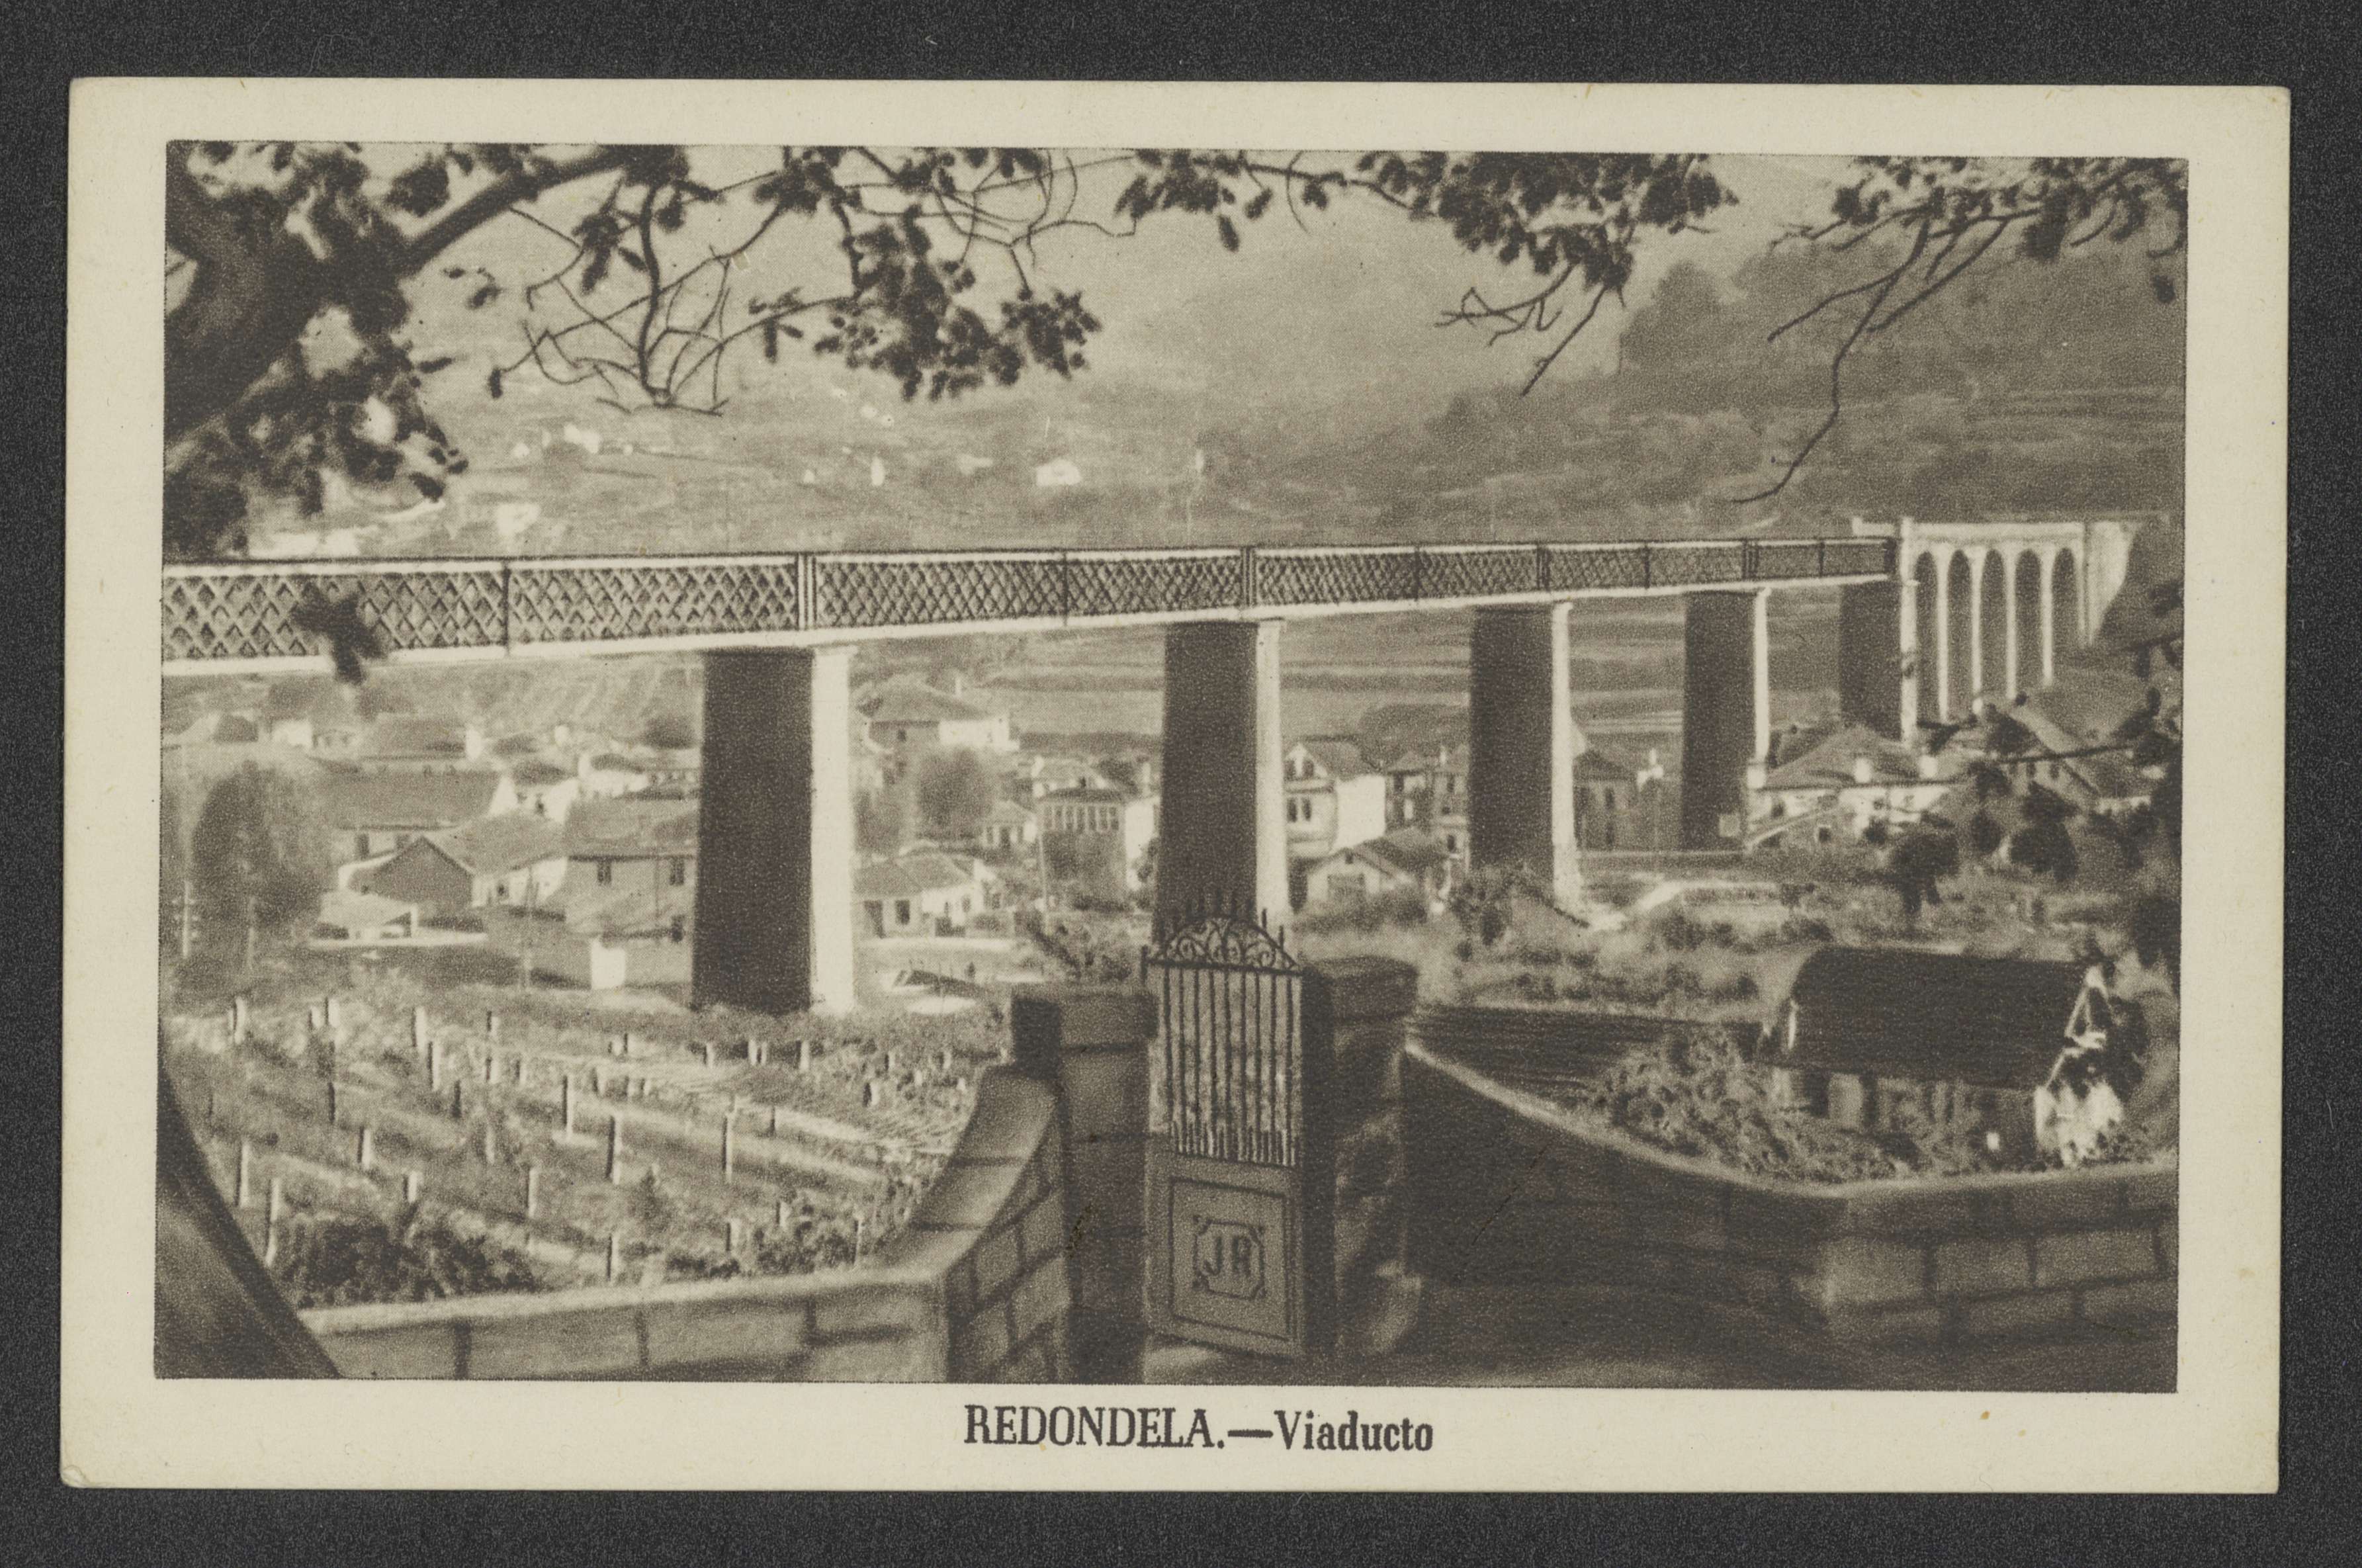 Redondela: Viaducto, ca. 1940